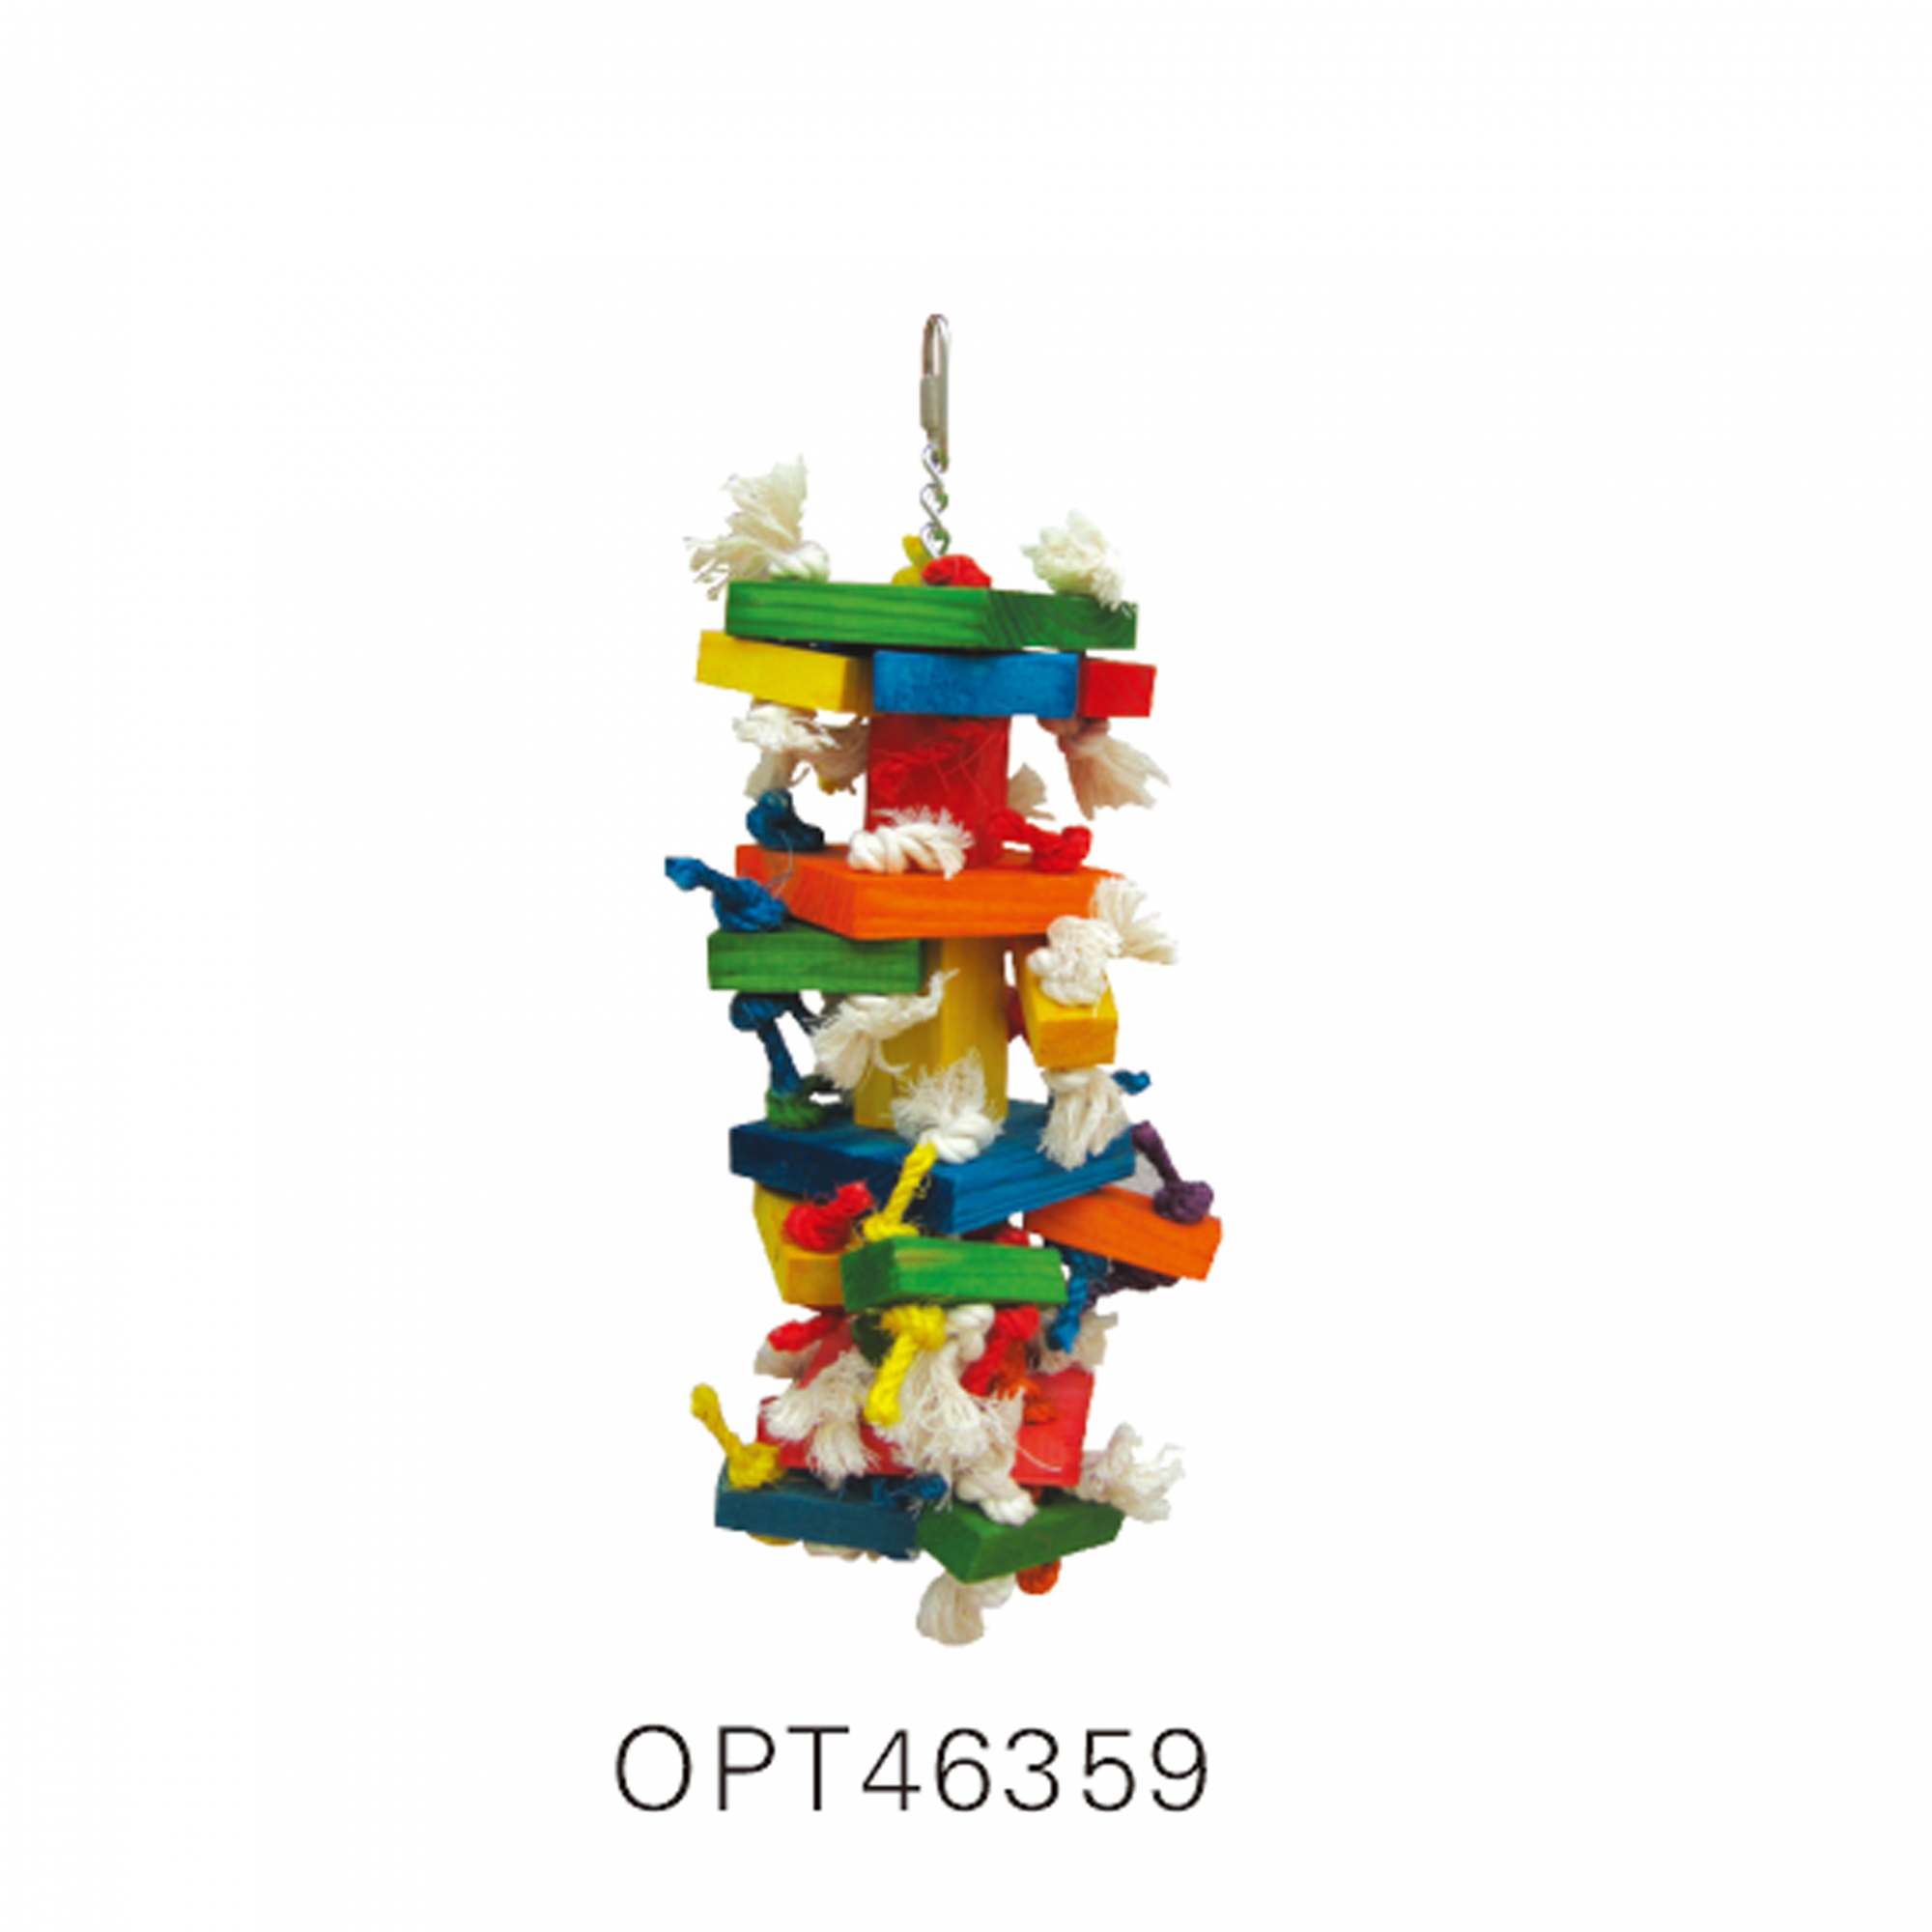 OPSP - 46359 - Bird Toy 44x15cm